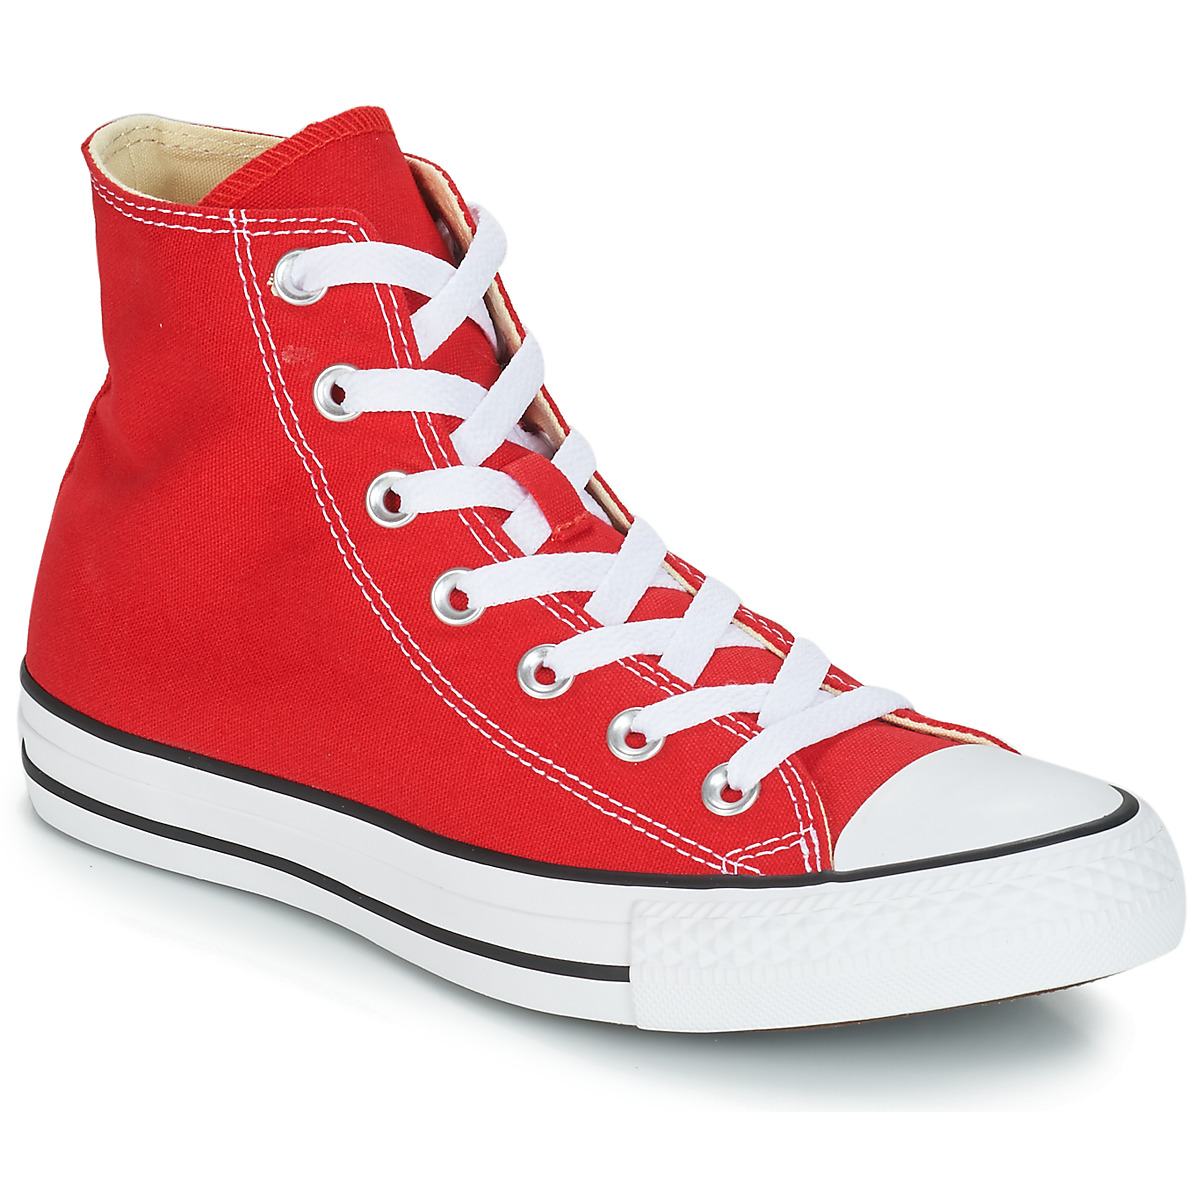 Converse CHUCK TAYLOR ALL STAR CORE HI Rosso - Consegna gratuita |  Spartoo.it ! - Scarpe Sneakers alte 62,99 €